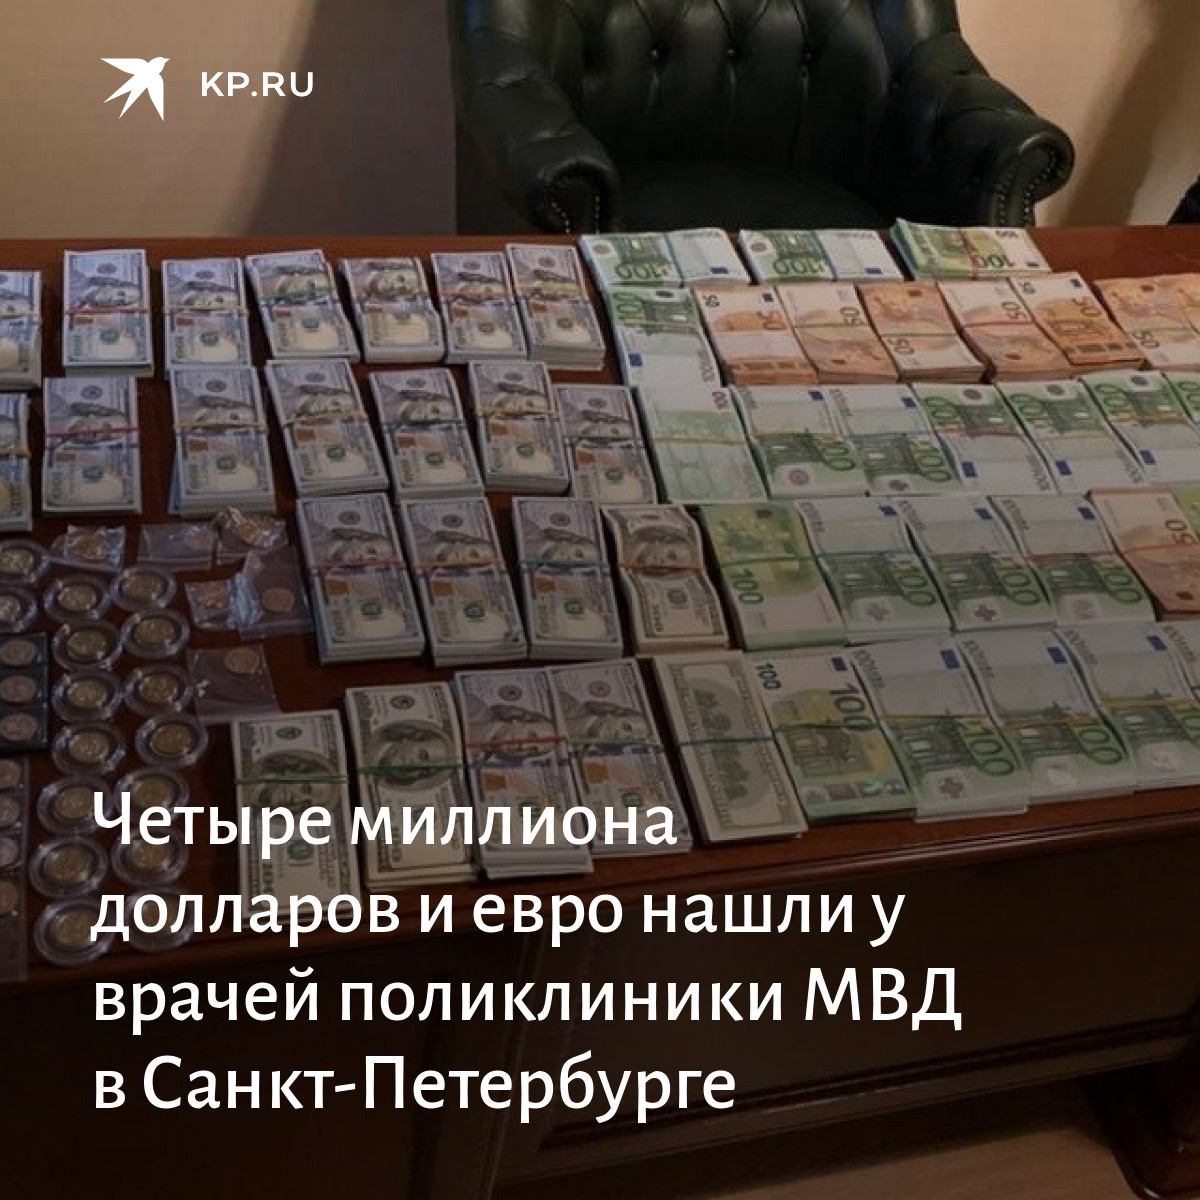 Взять 1000000 рублей в банке. Кредит на 1000000 миллионов долларов. 1000000 Рублей на открытие бизнеса. Кредит 1000000 рублей наличными. Как получить миллион.